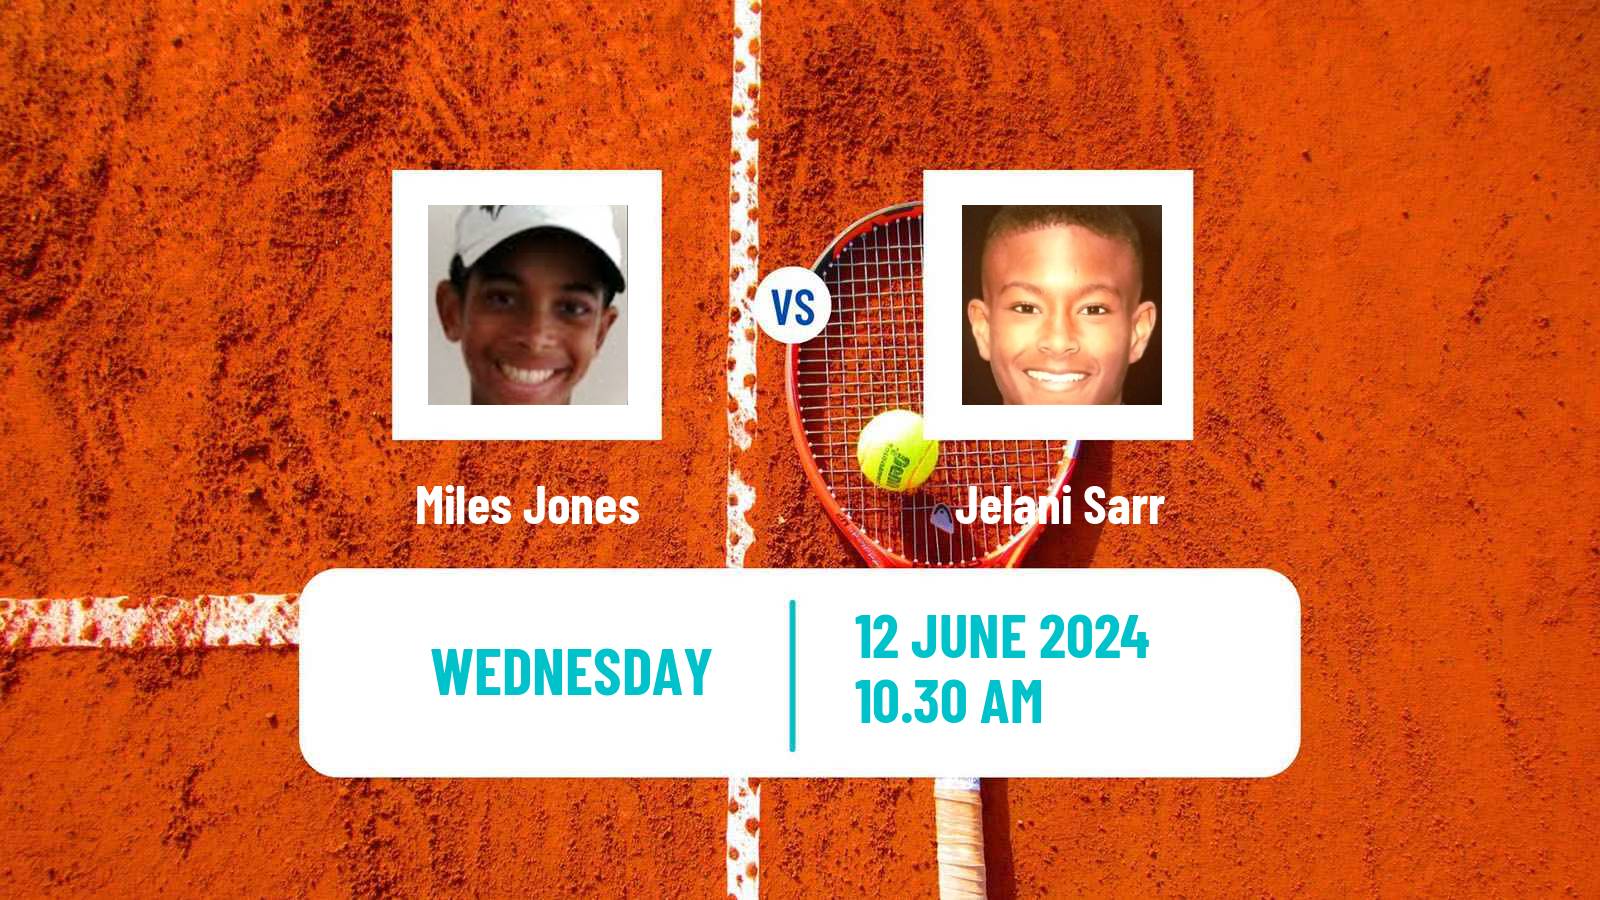 Tennis ITF M15 Santo Domingo 2 Men Miles Jones - Jelani Sarr